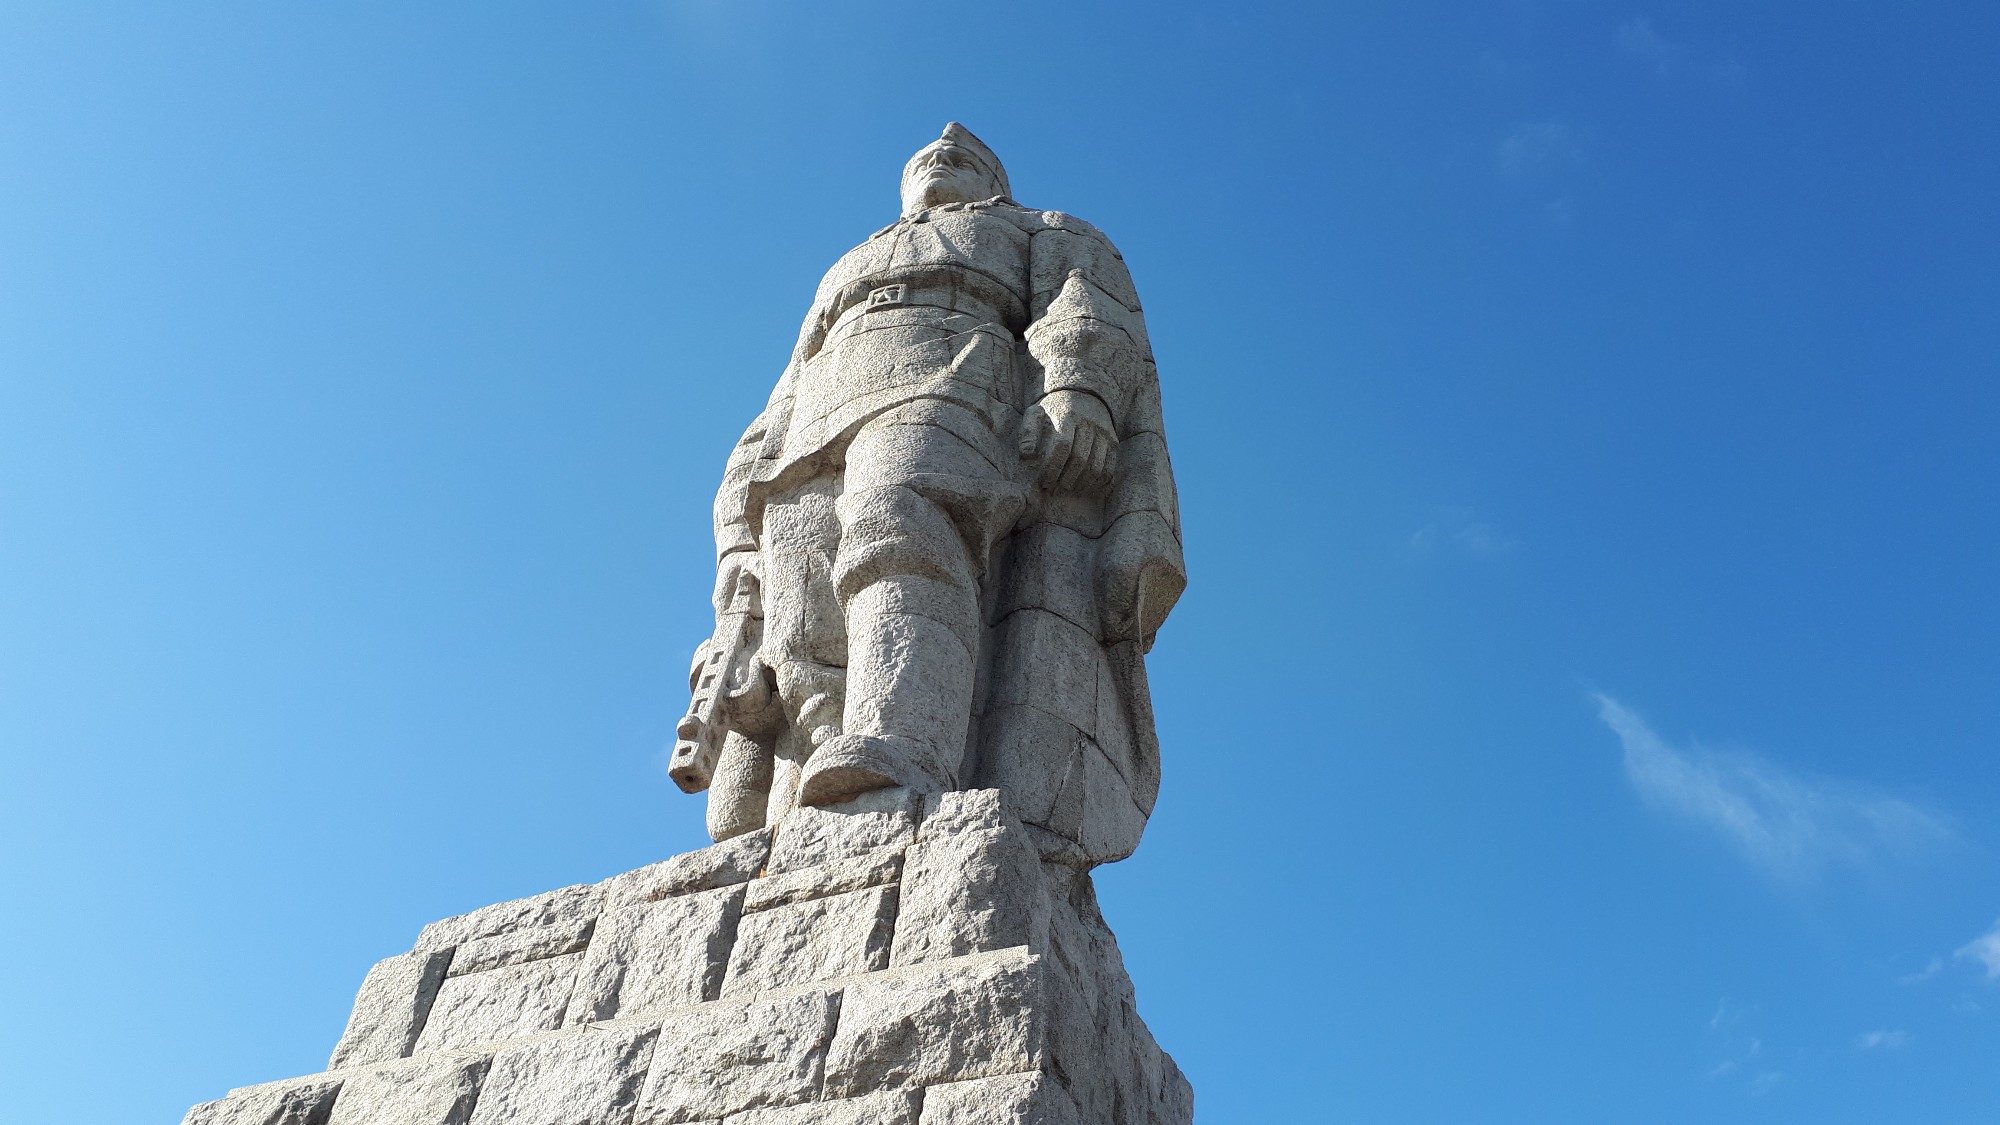 Памятник русскому солдату в болгарии алеша фото